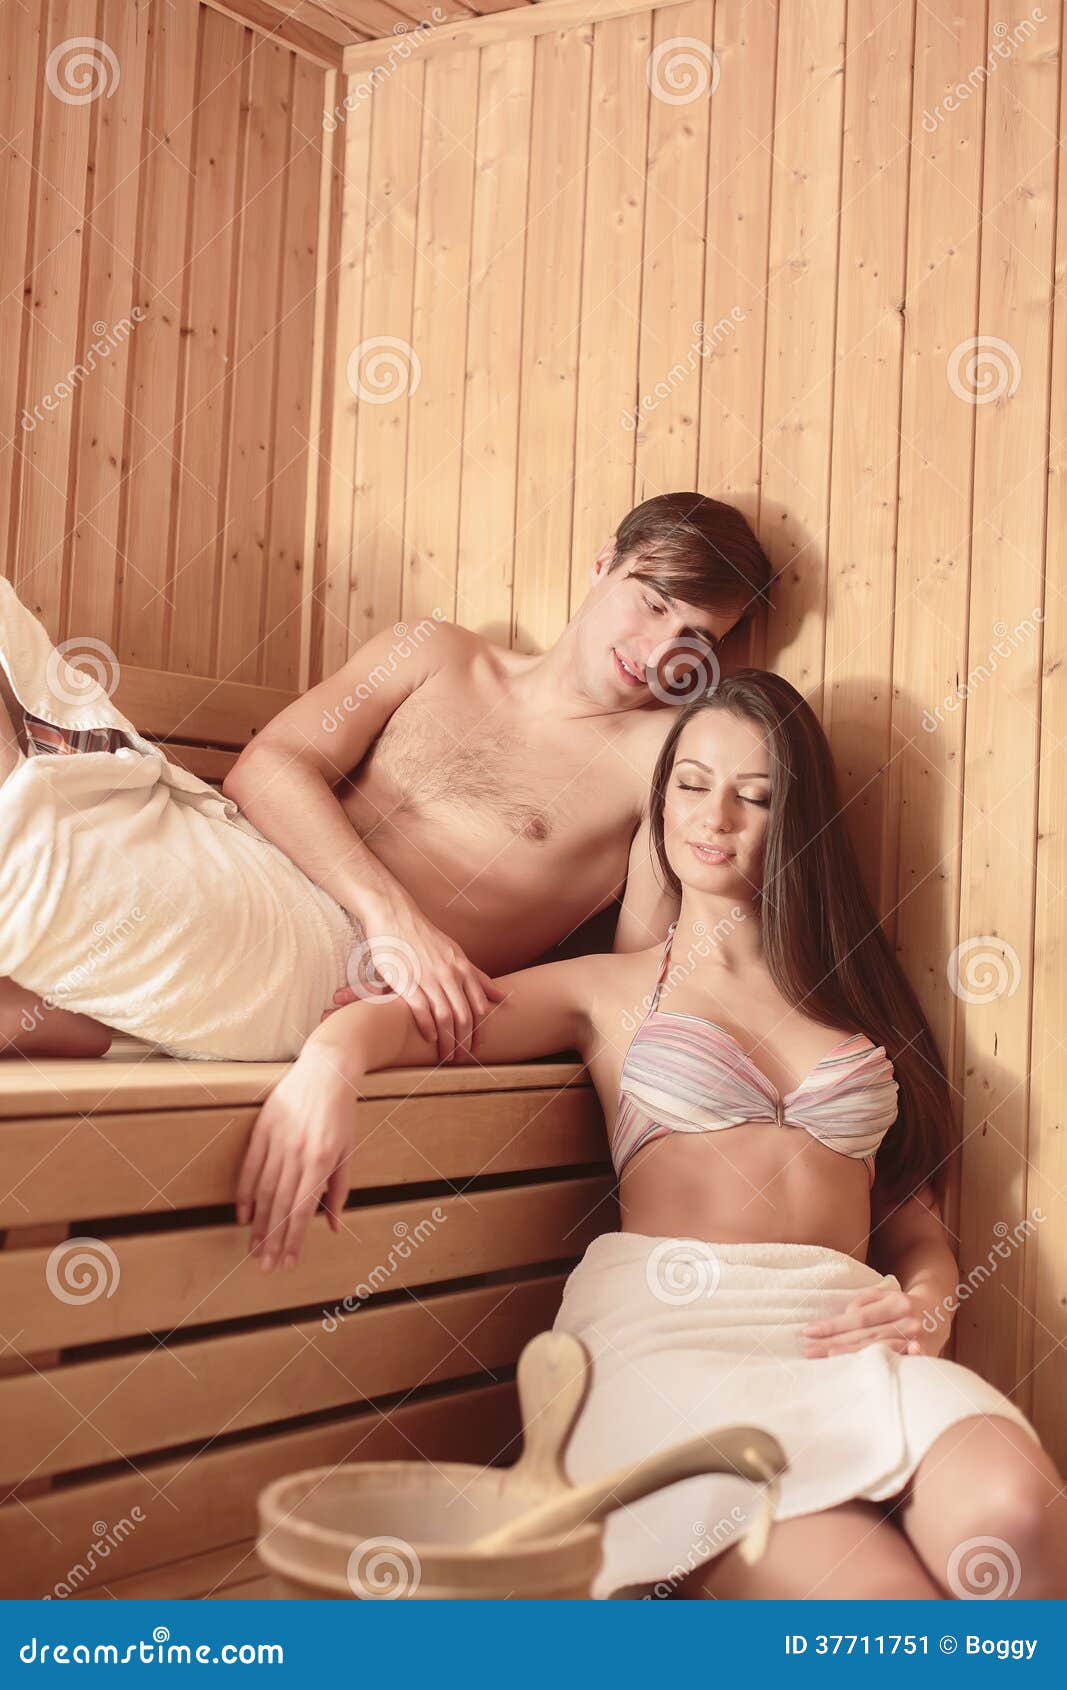 мы с сестрой моемся в бане голыми фото 91